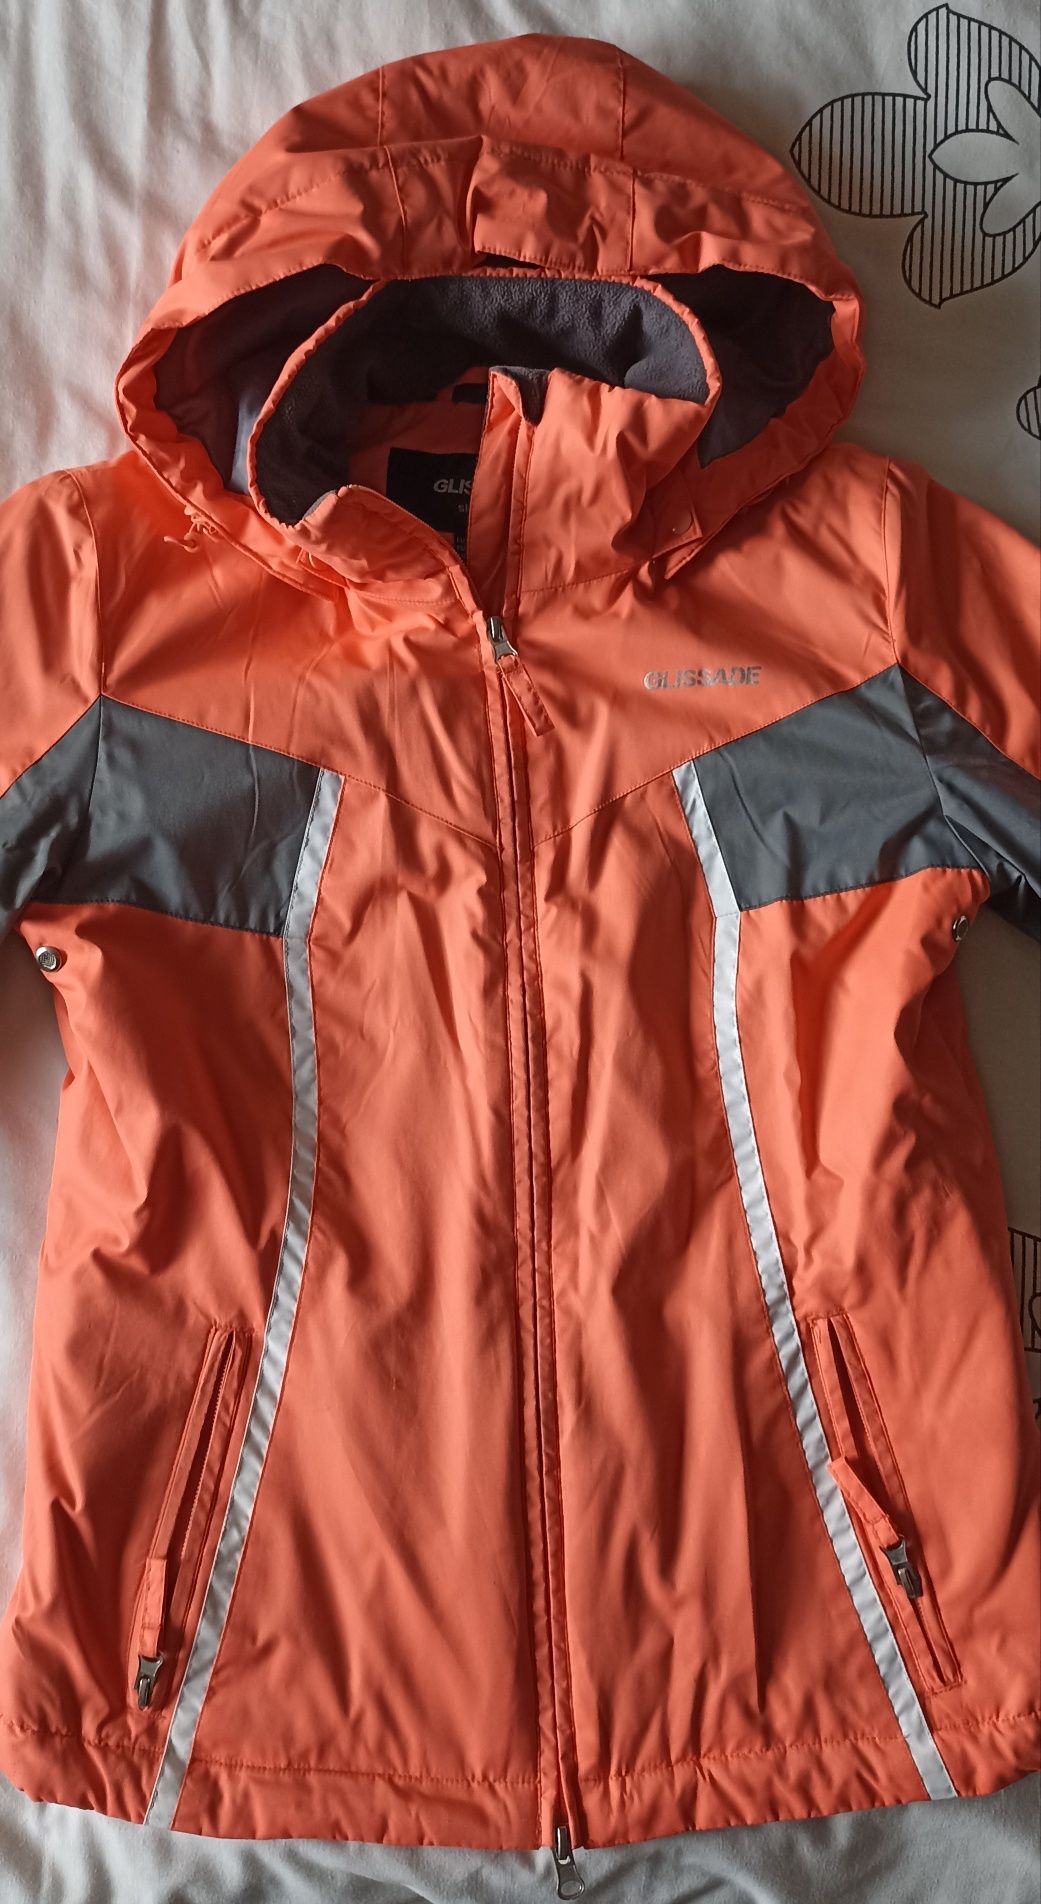 Продам куртку для горнолыжного спорта Glissade размер S 42